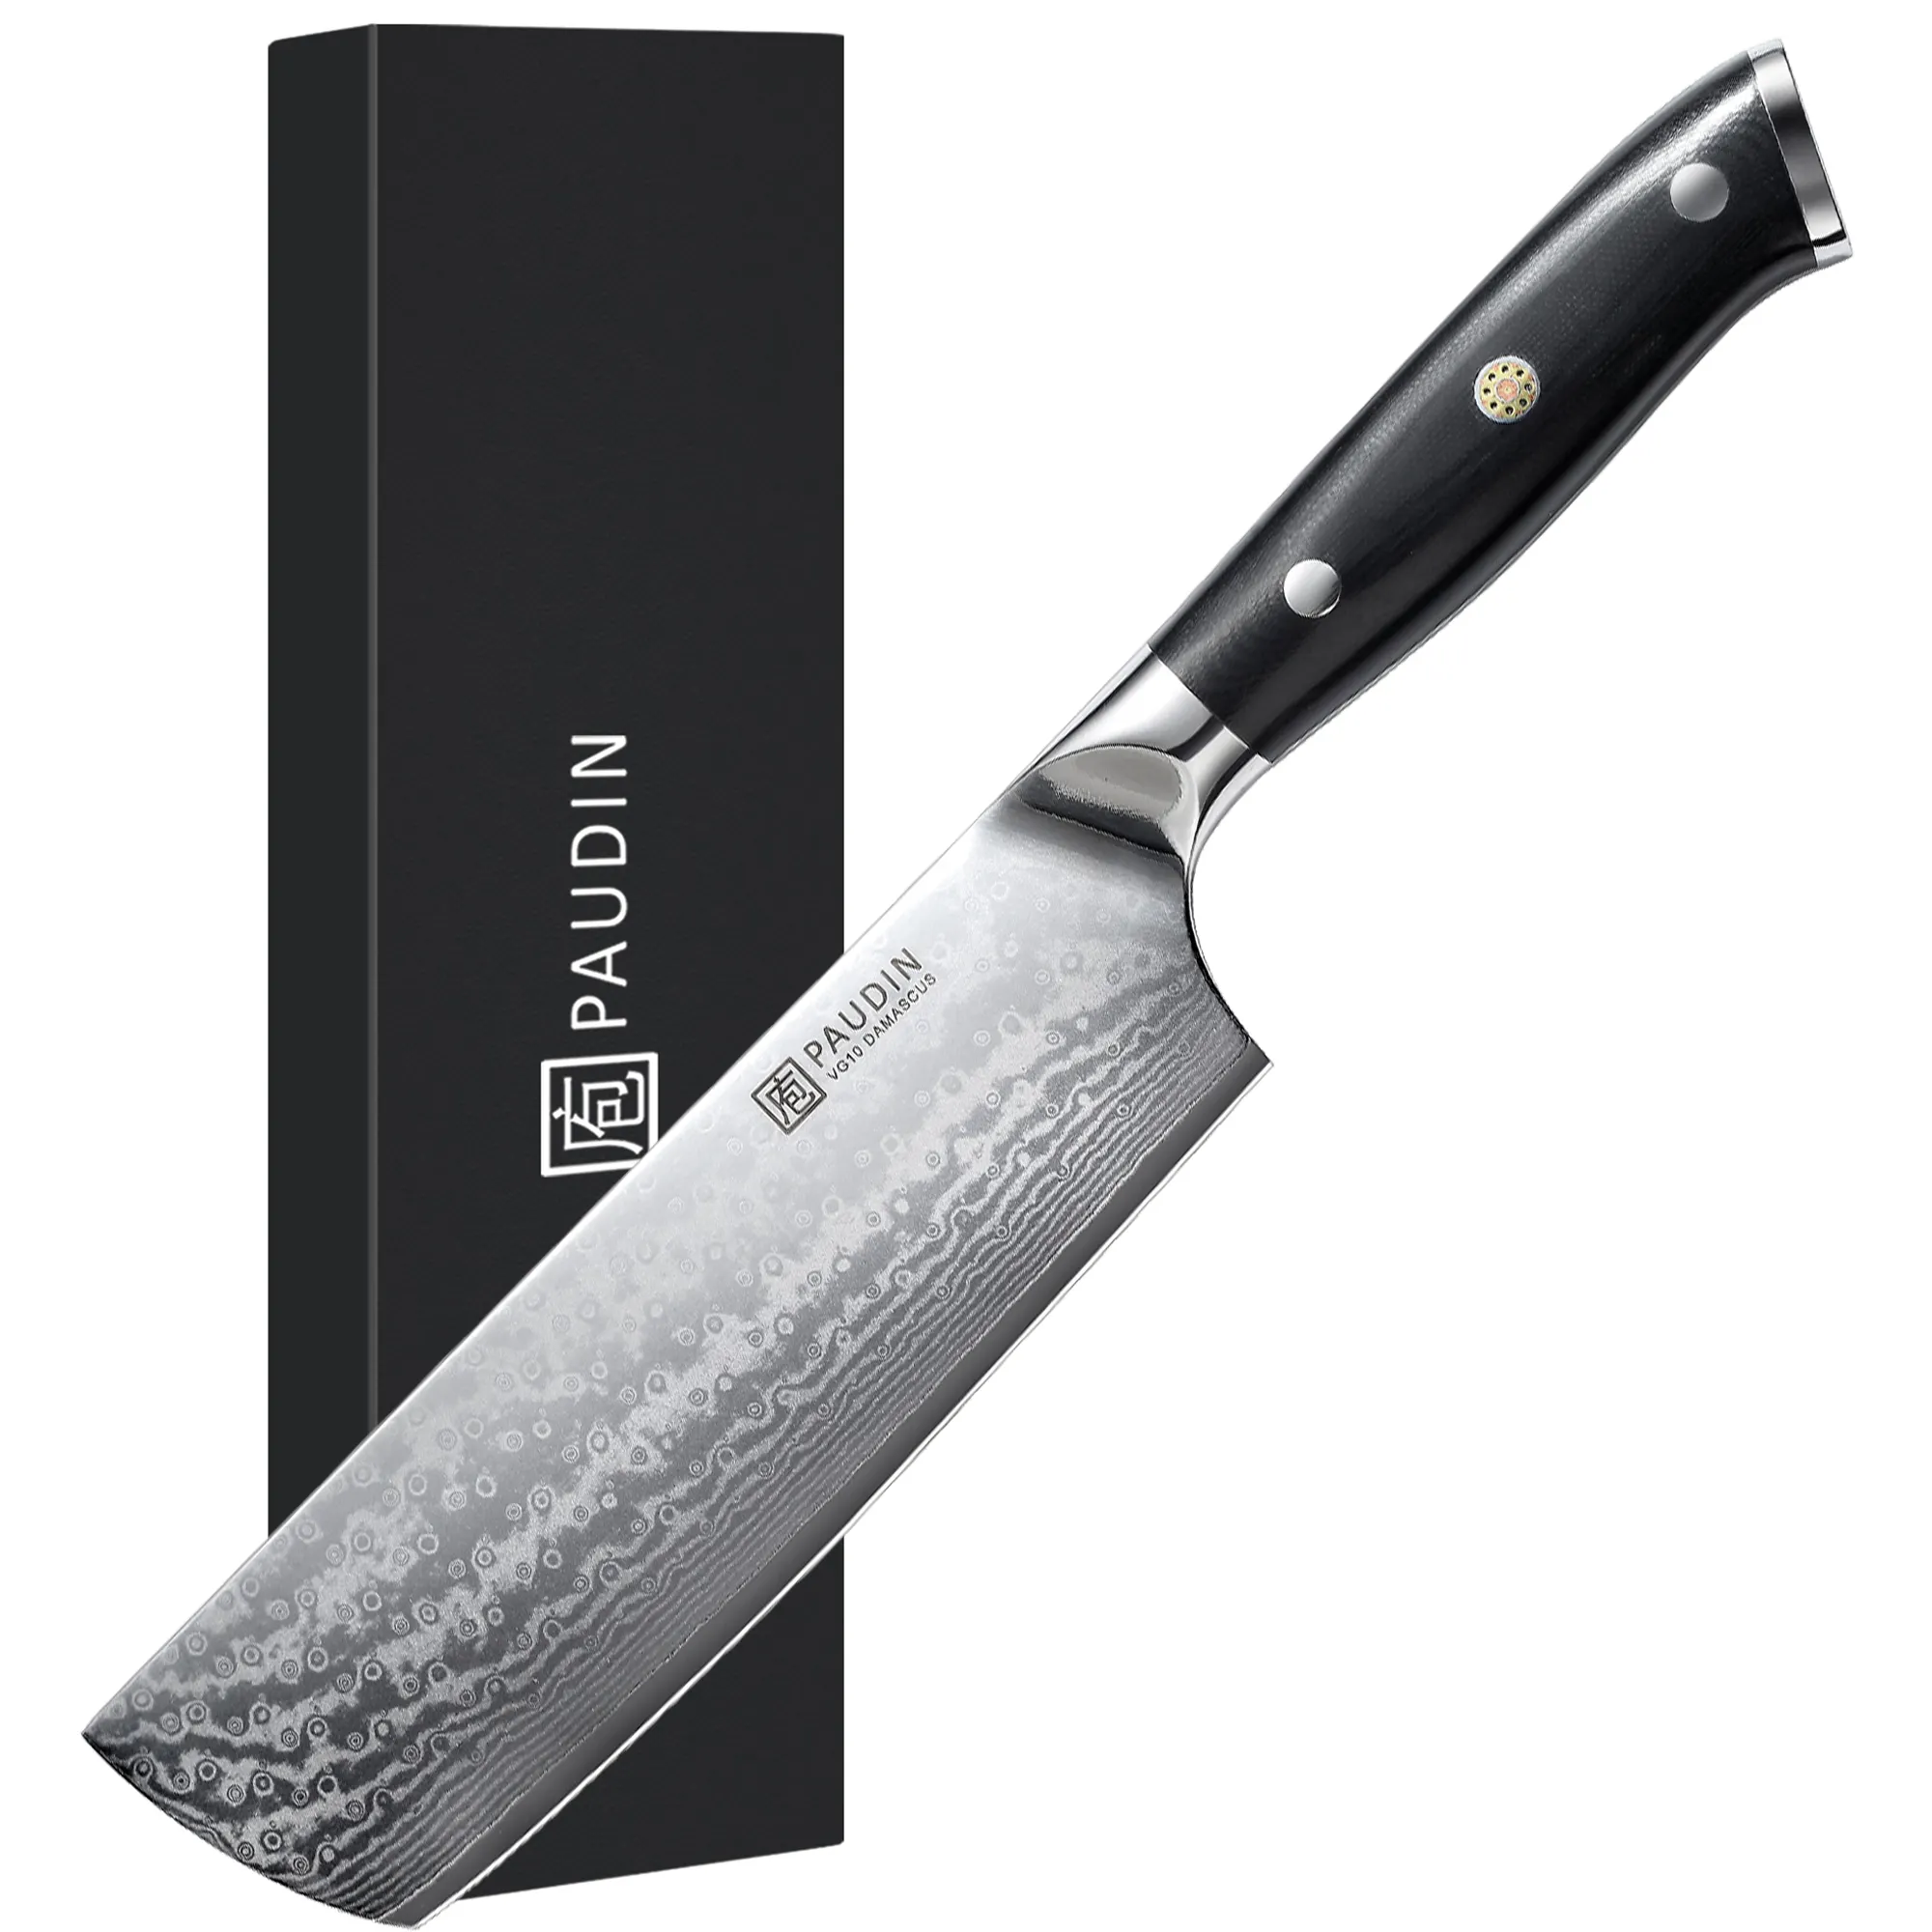 G10 fiberglas saplı Nakiri balta bıçağı mutfak şam çeliği bıçak ile 7 inç yüksek kaliteli 67 katmanları şef bıçağı